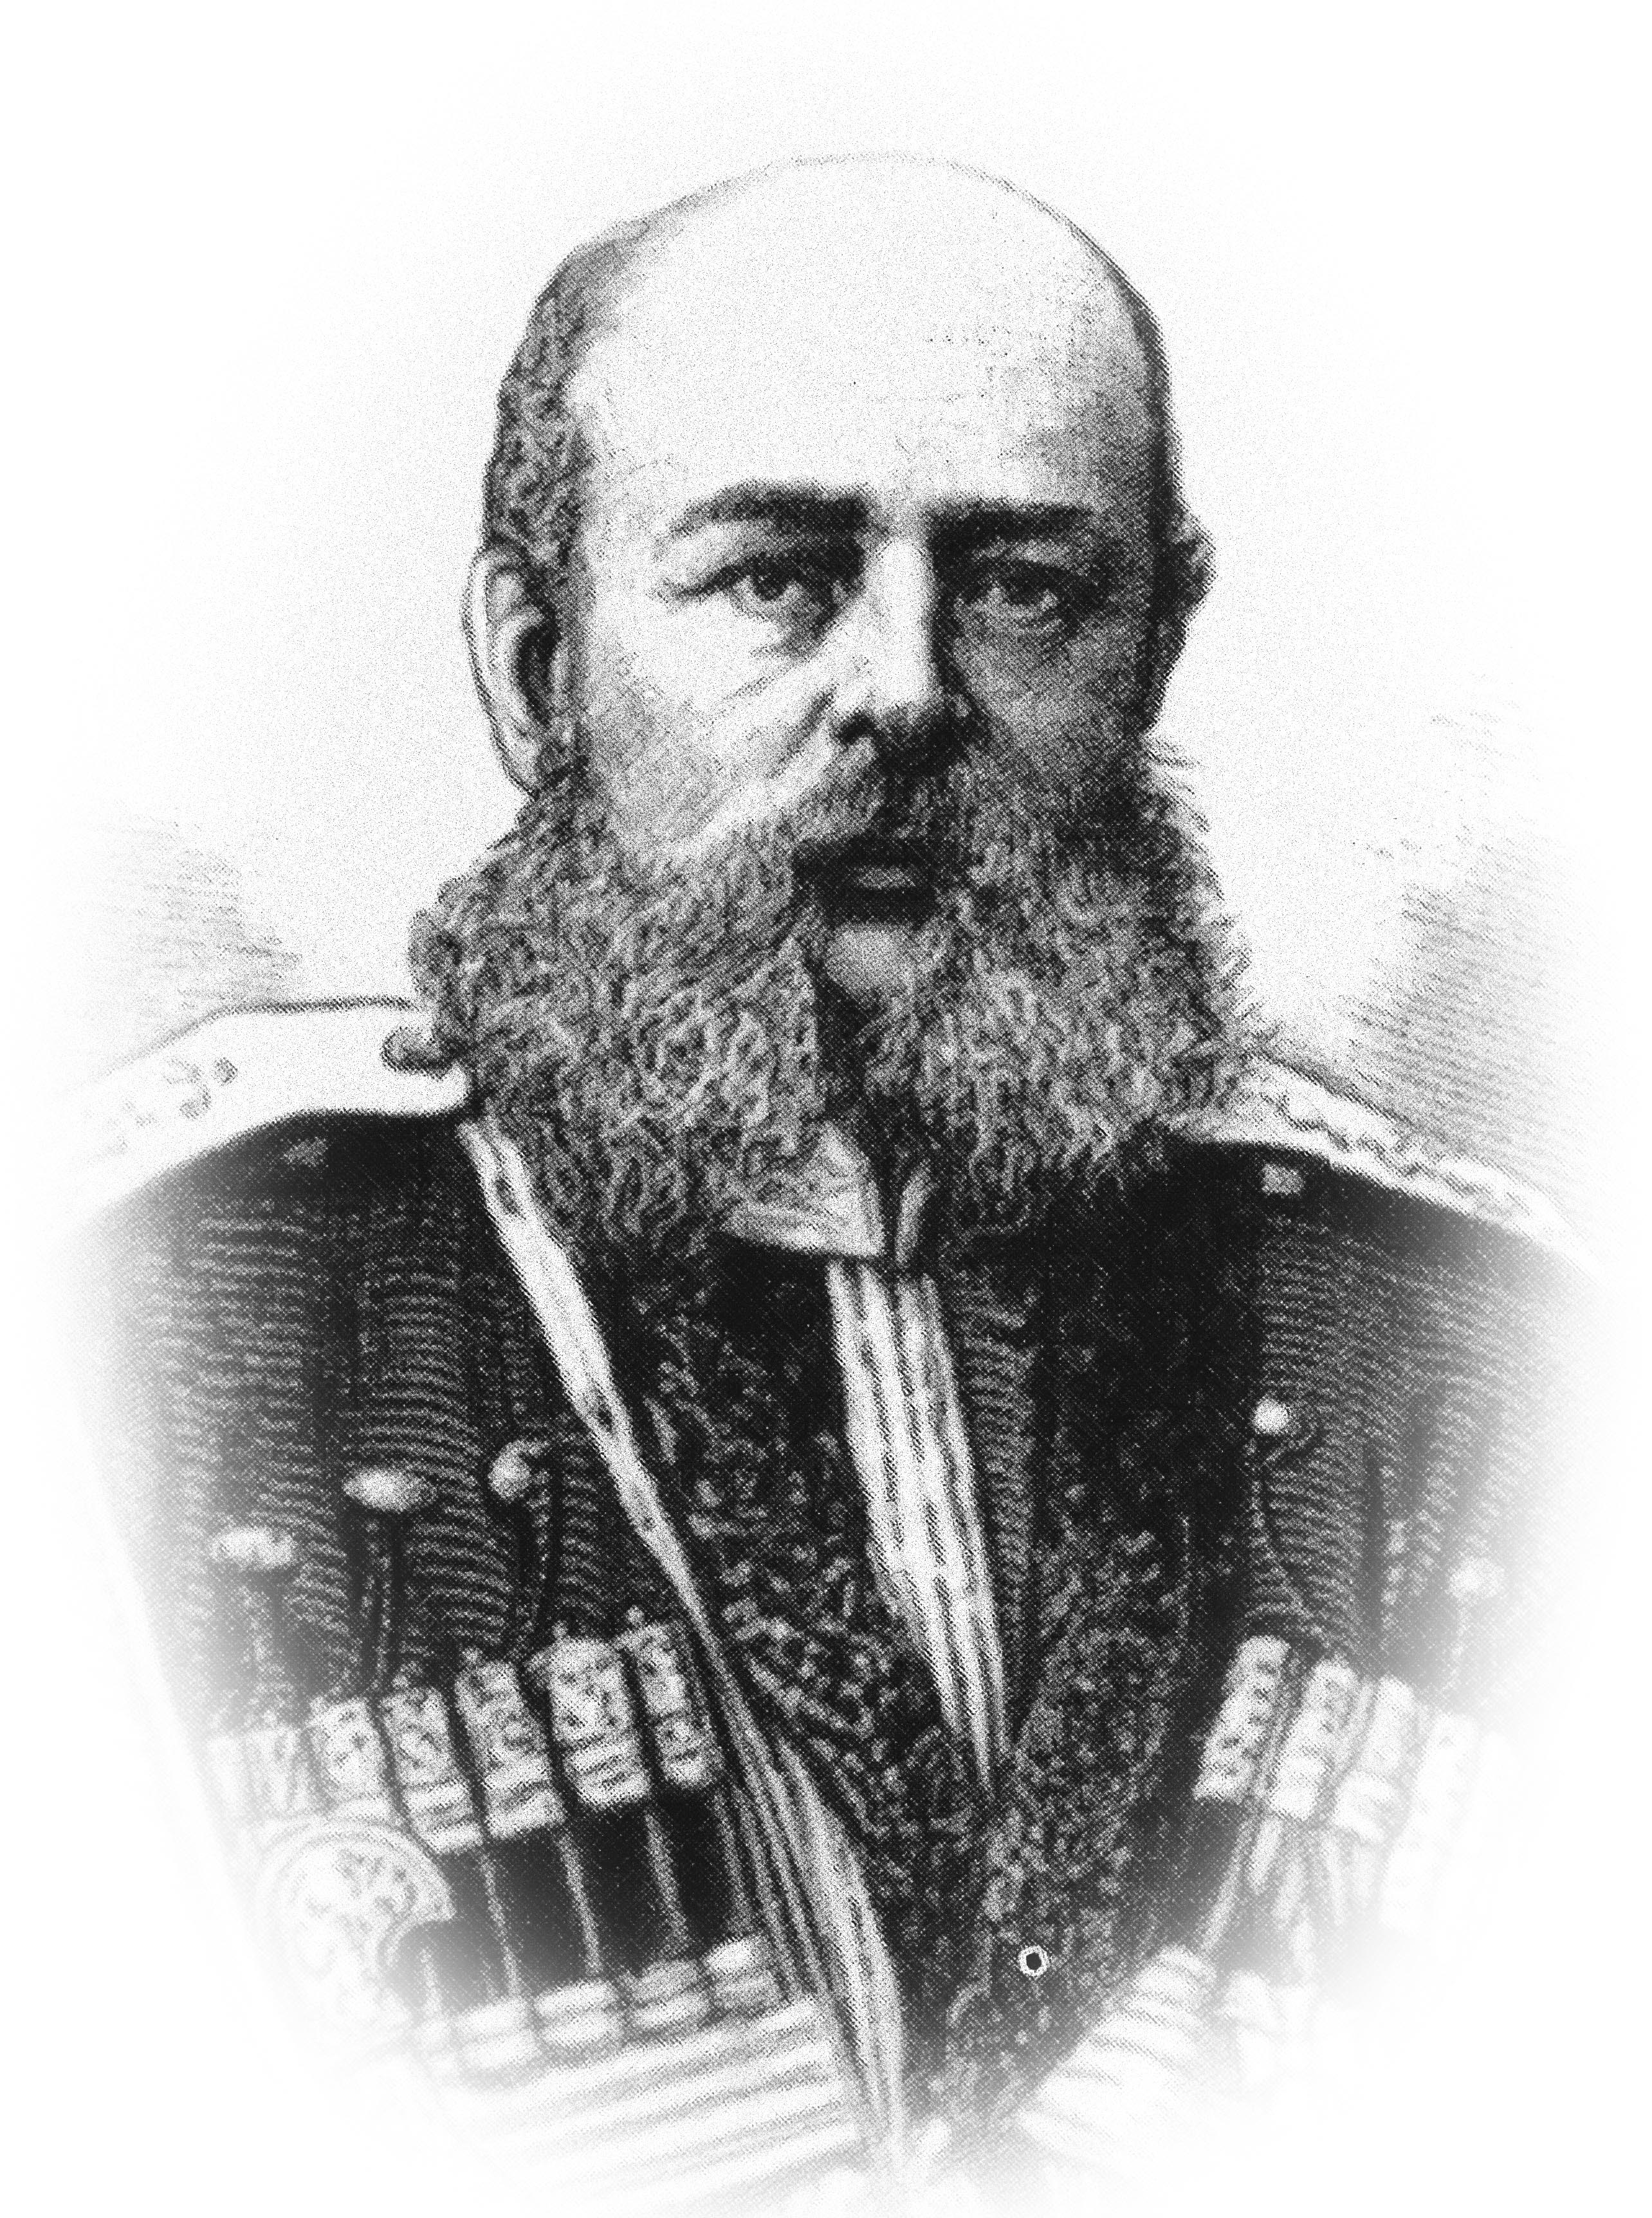 Отец Михаила Дмитриевича Скобелева, Дмитрий Иванович